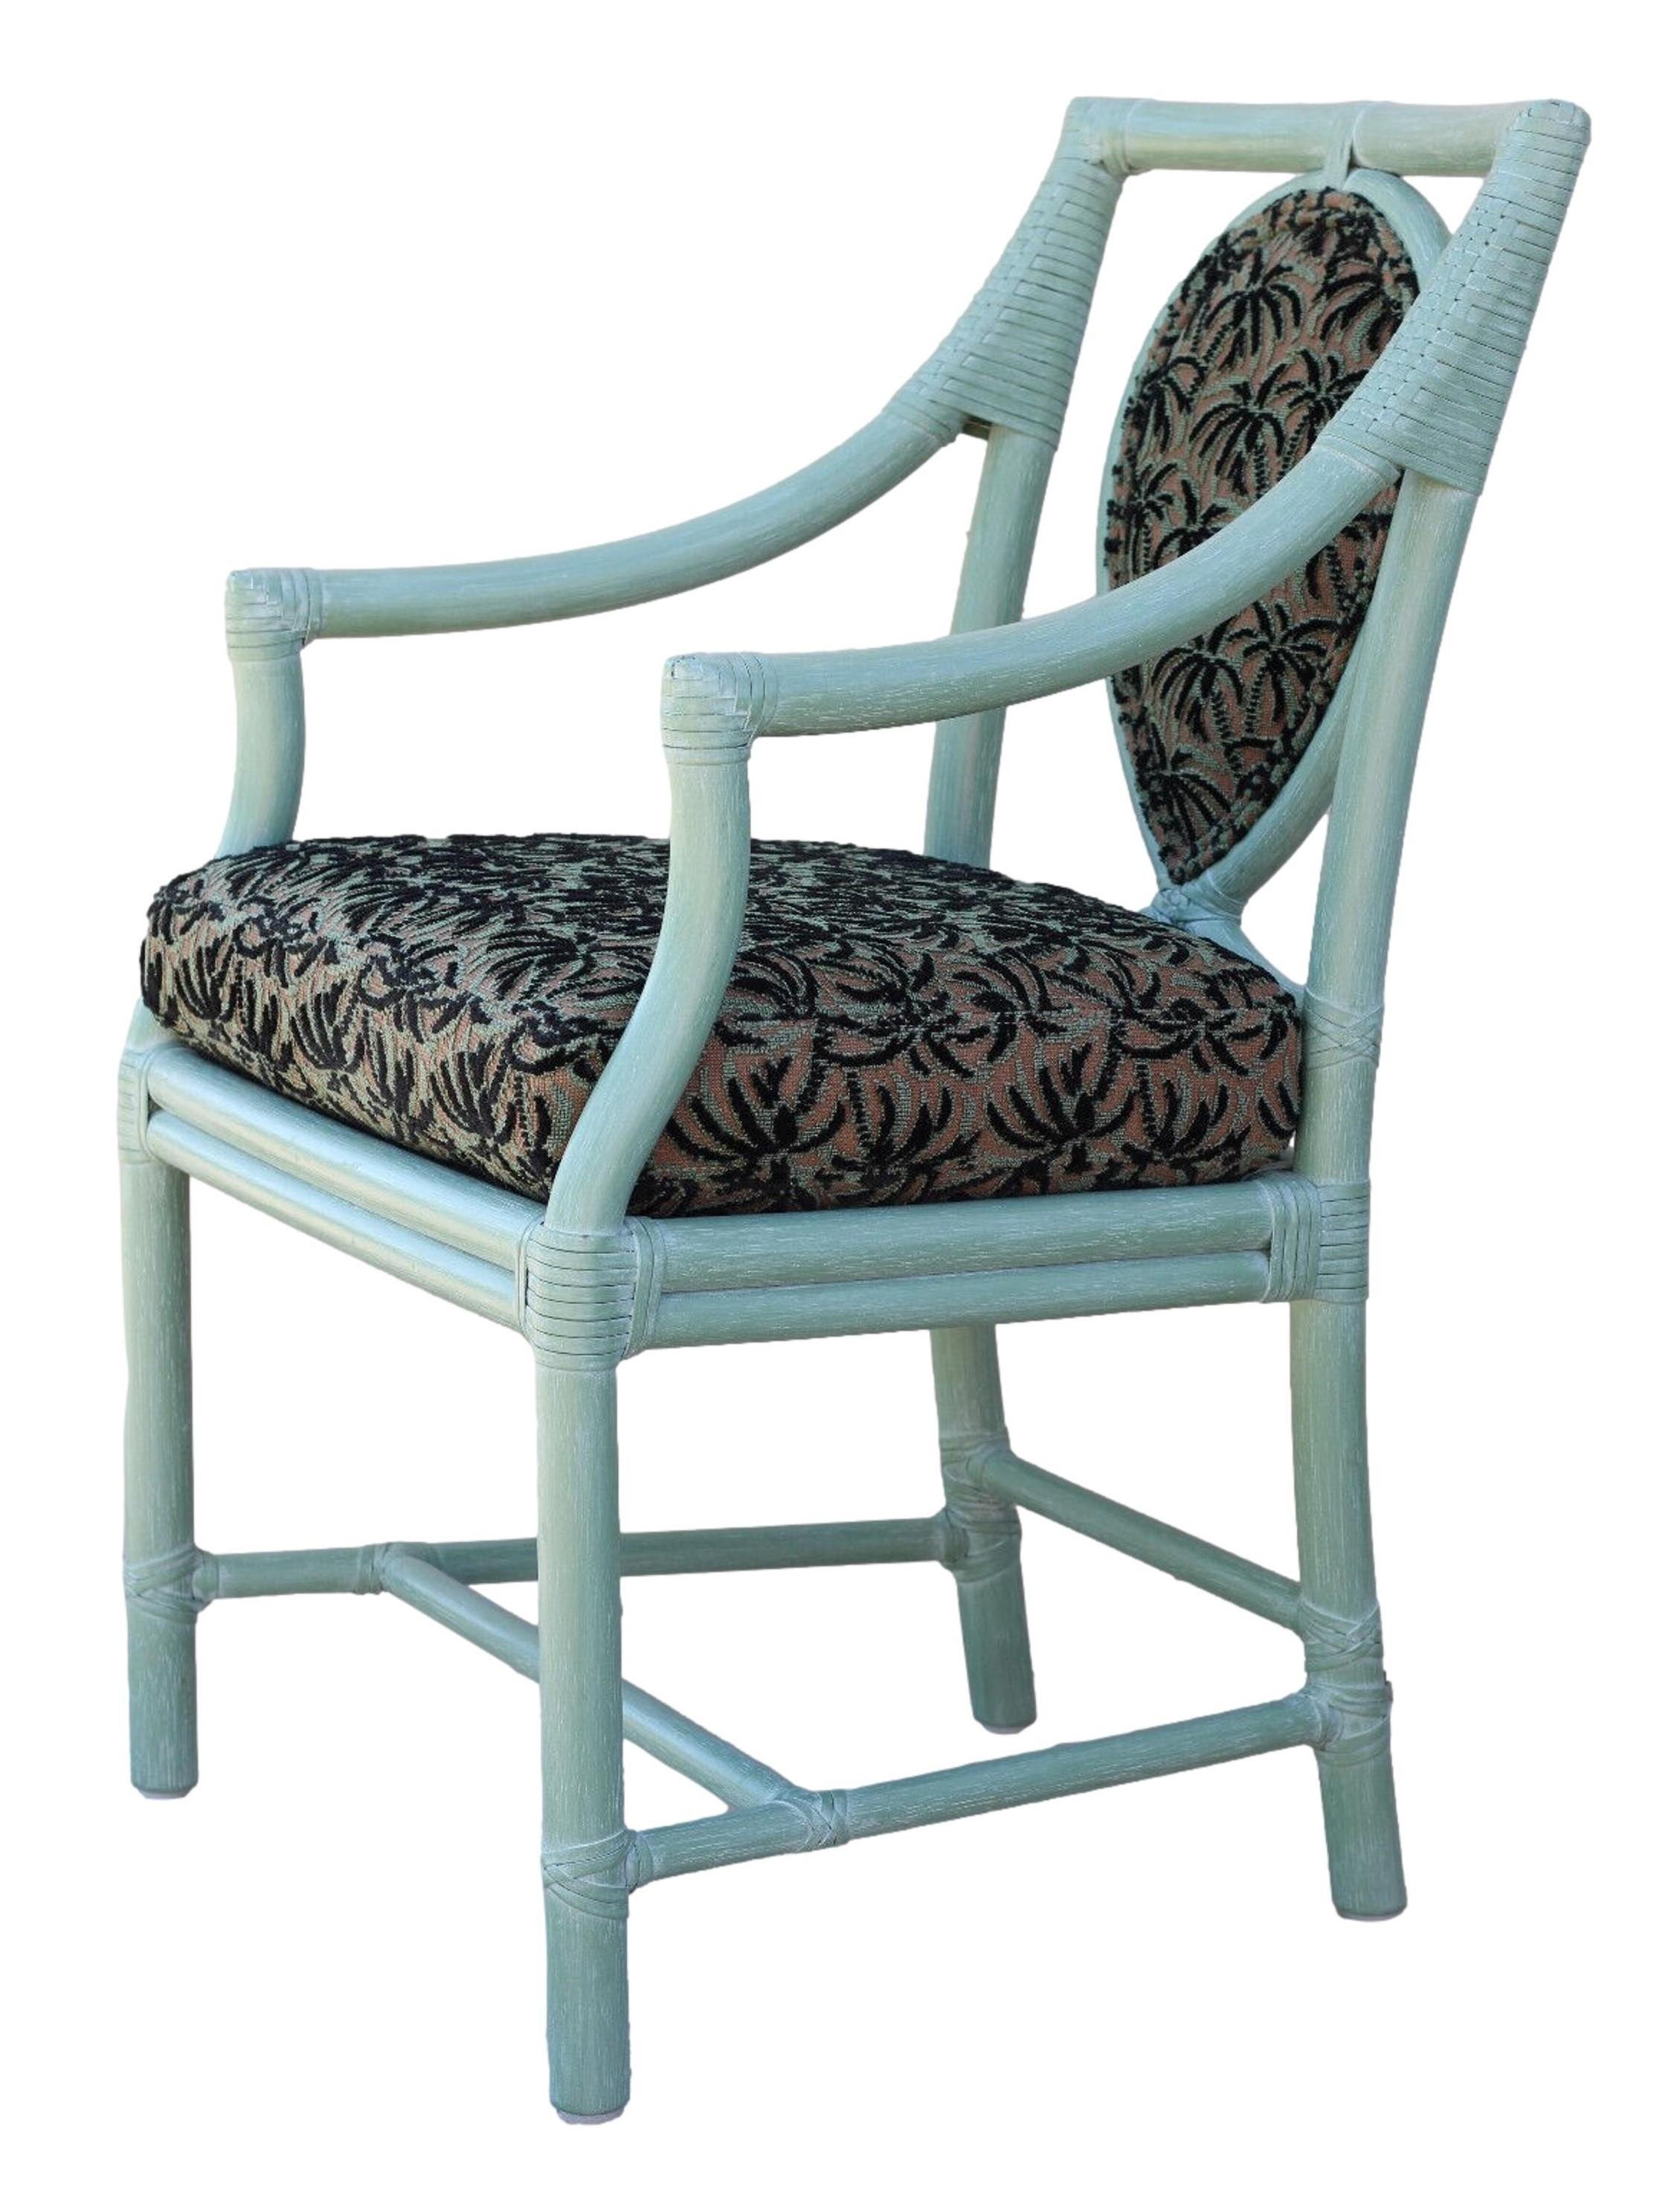 Un ensemble de quatre fauteuils en rotin, conçu par l'innovatrice de rupture Elinor McGuire dans le style moderne organique californien. Ces chaises de salle à manger impeccablement fabriquées affichent une boucle gestuelle encadrée dans un dossier